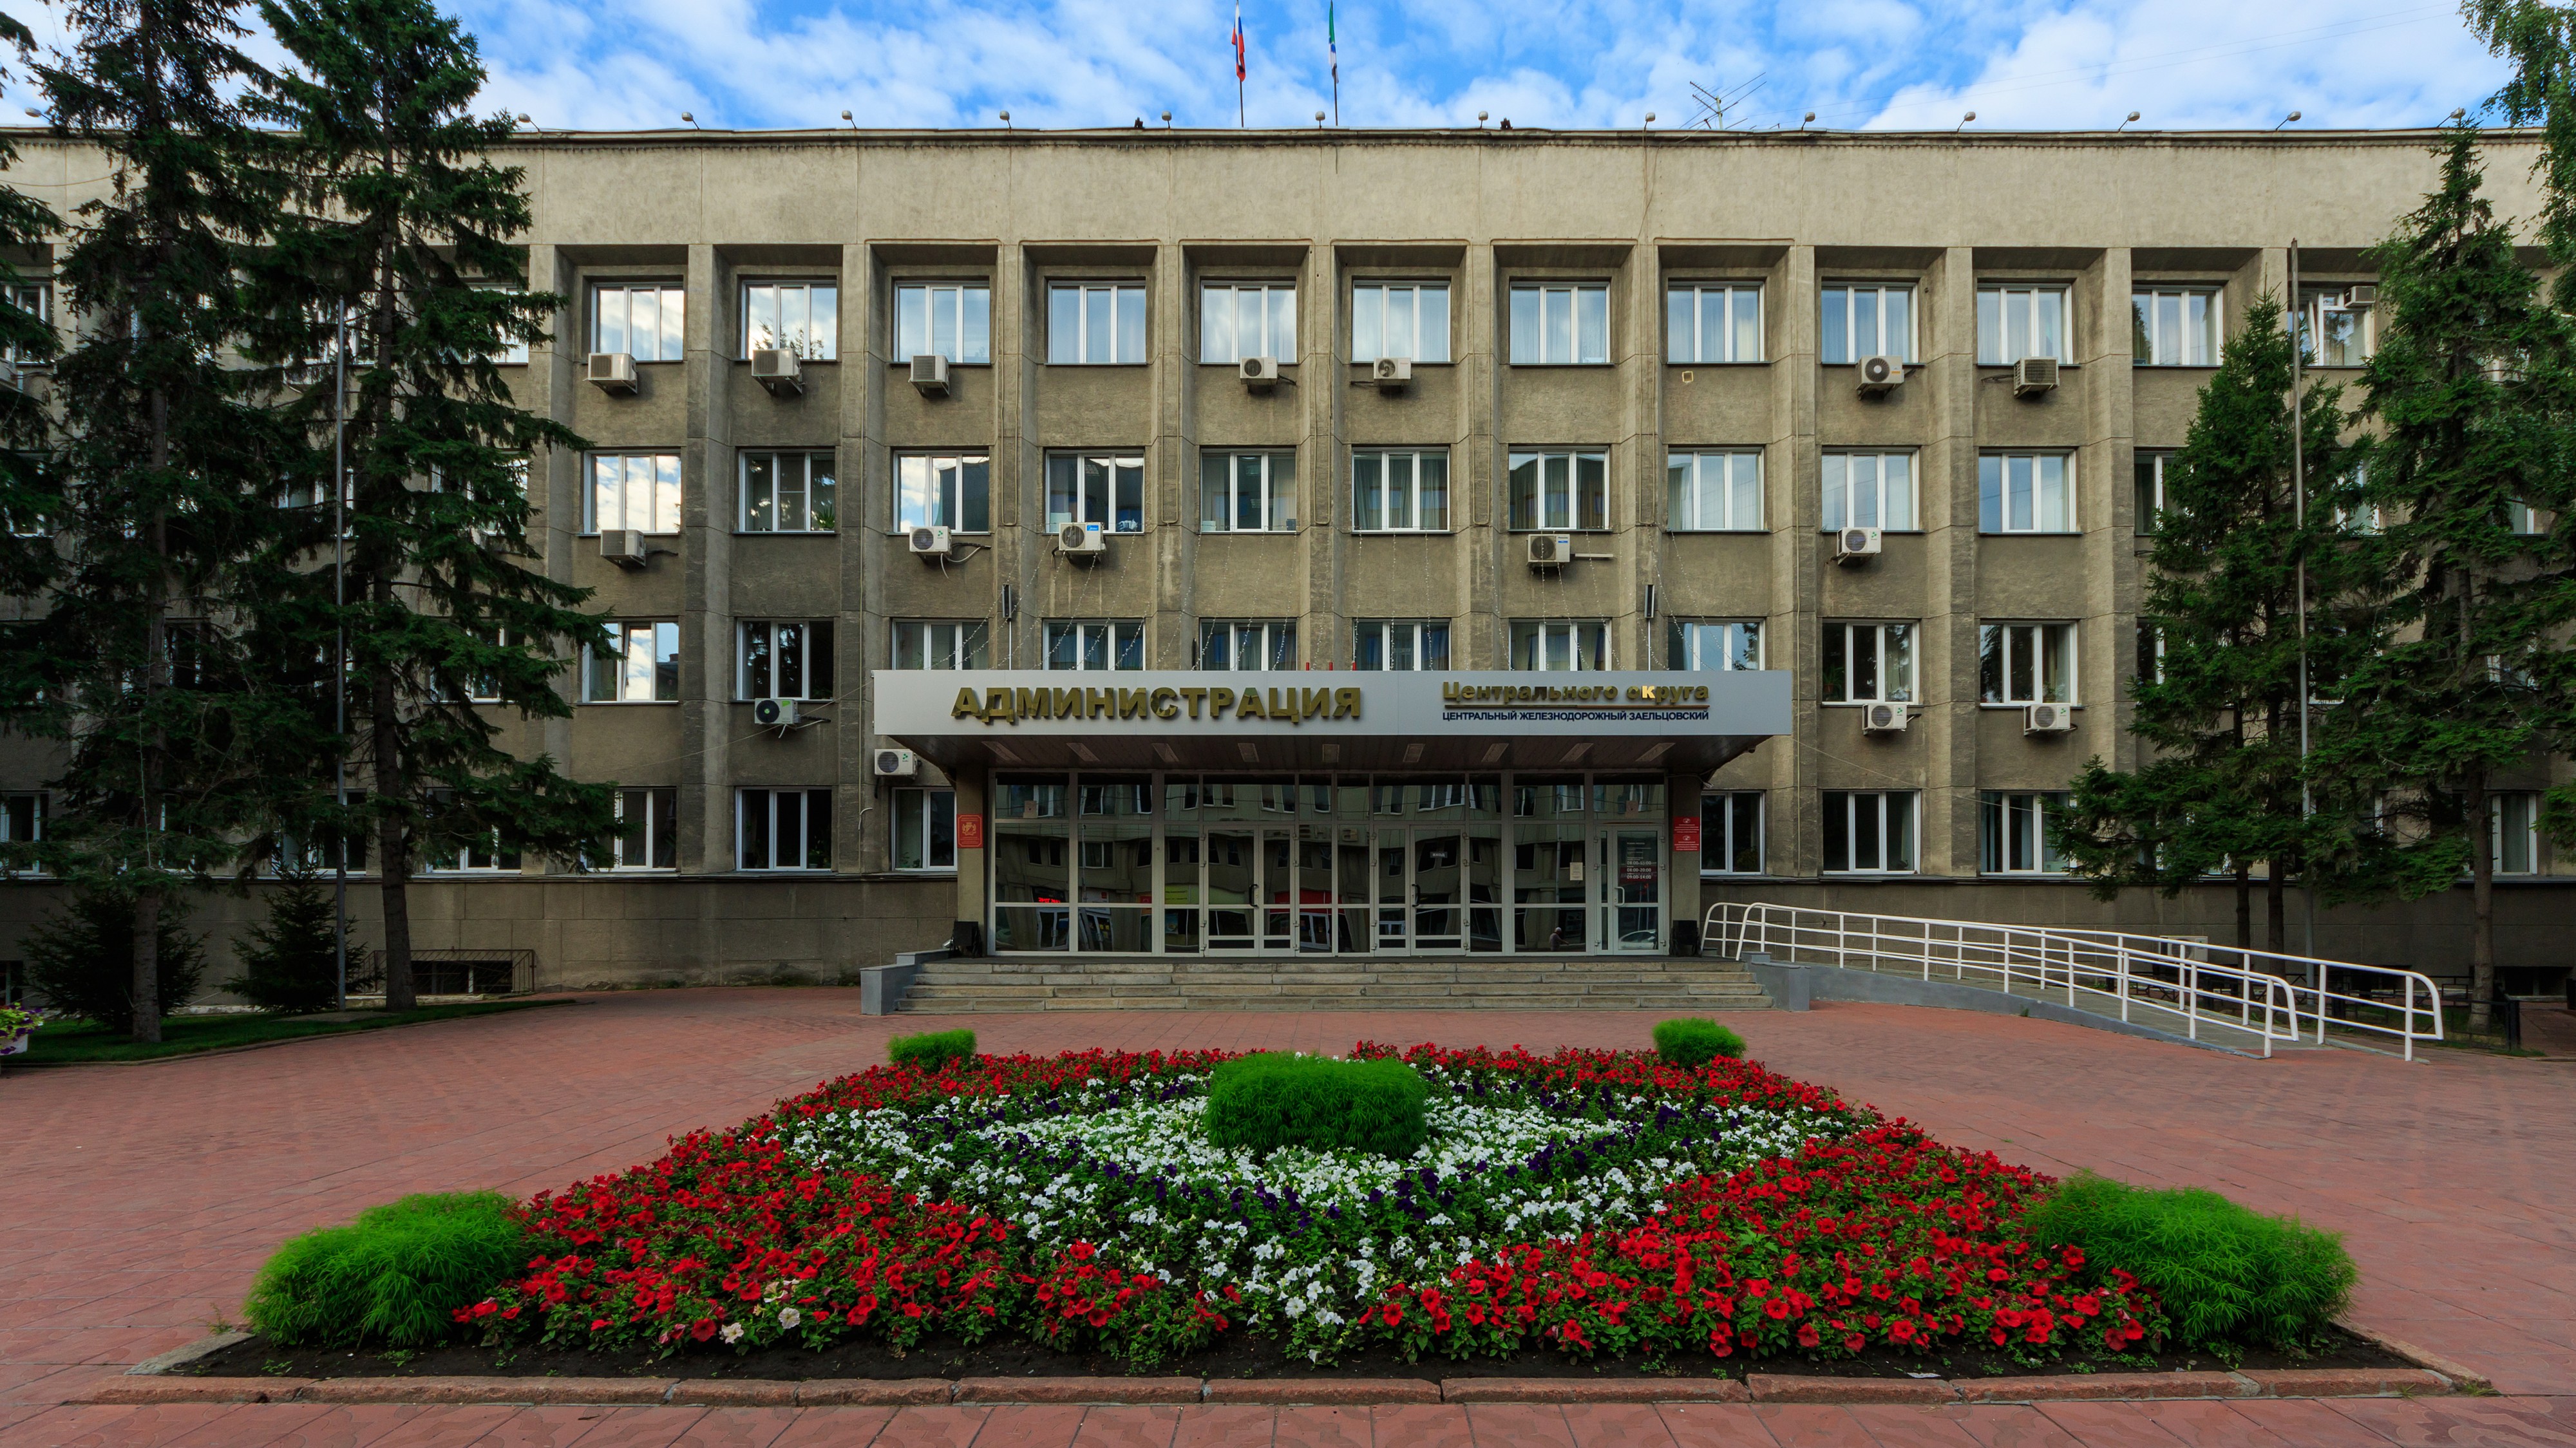 Novosibirsk LeninaSt Central Okrug building 07-2016